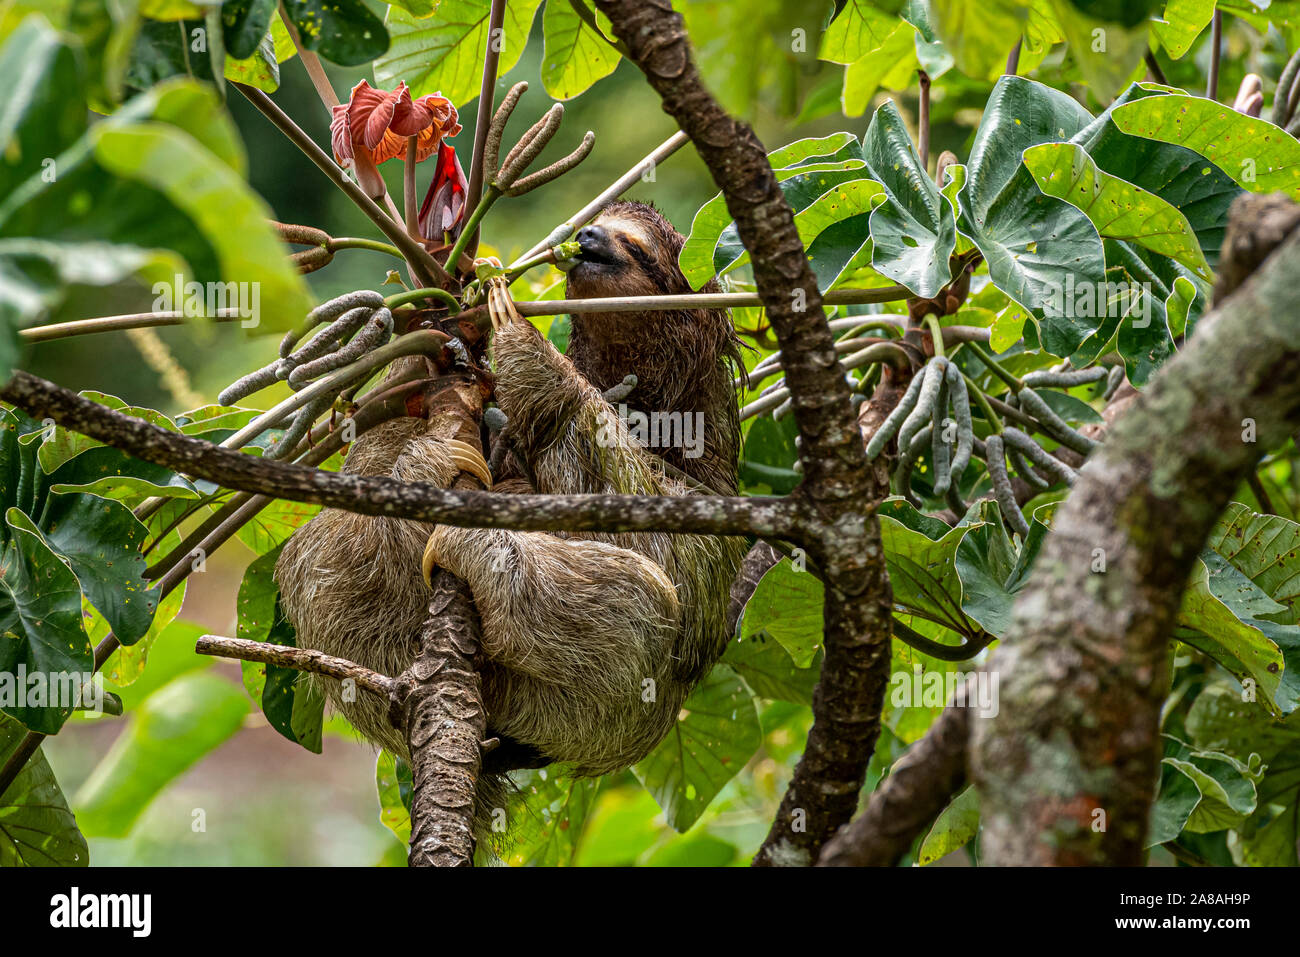 Trois doigts à gorge brune sloth se nourrissant d'un arbre Cecropia peltata image prises dans la forêt de pluie Panamas Banque D'Images